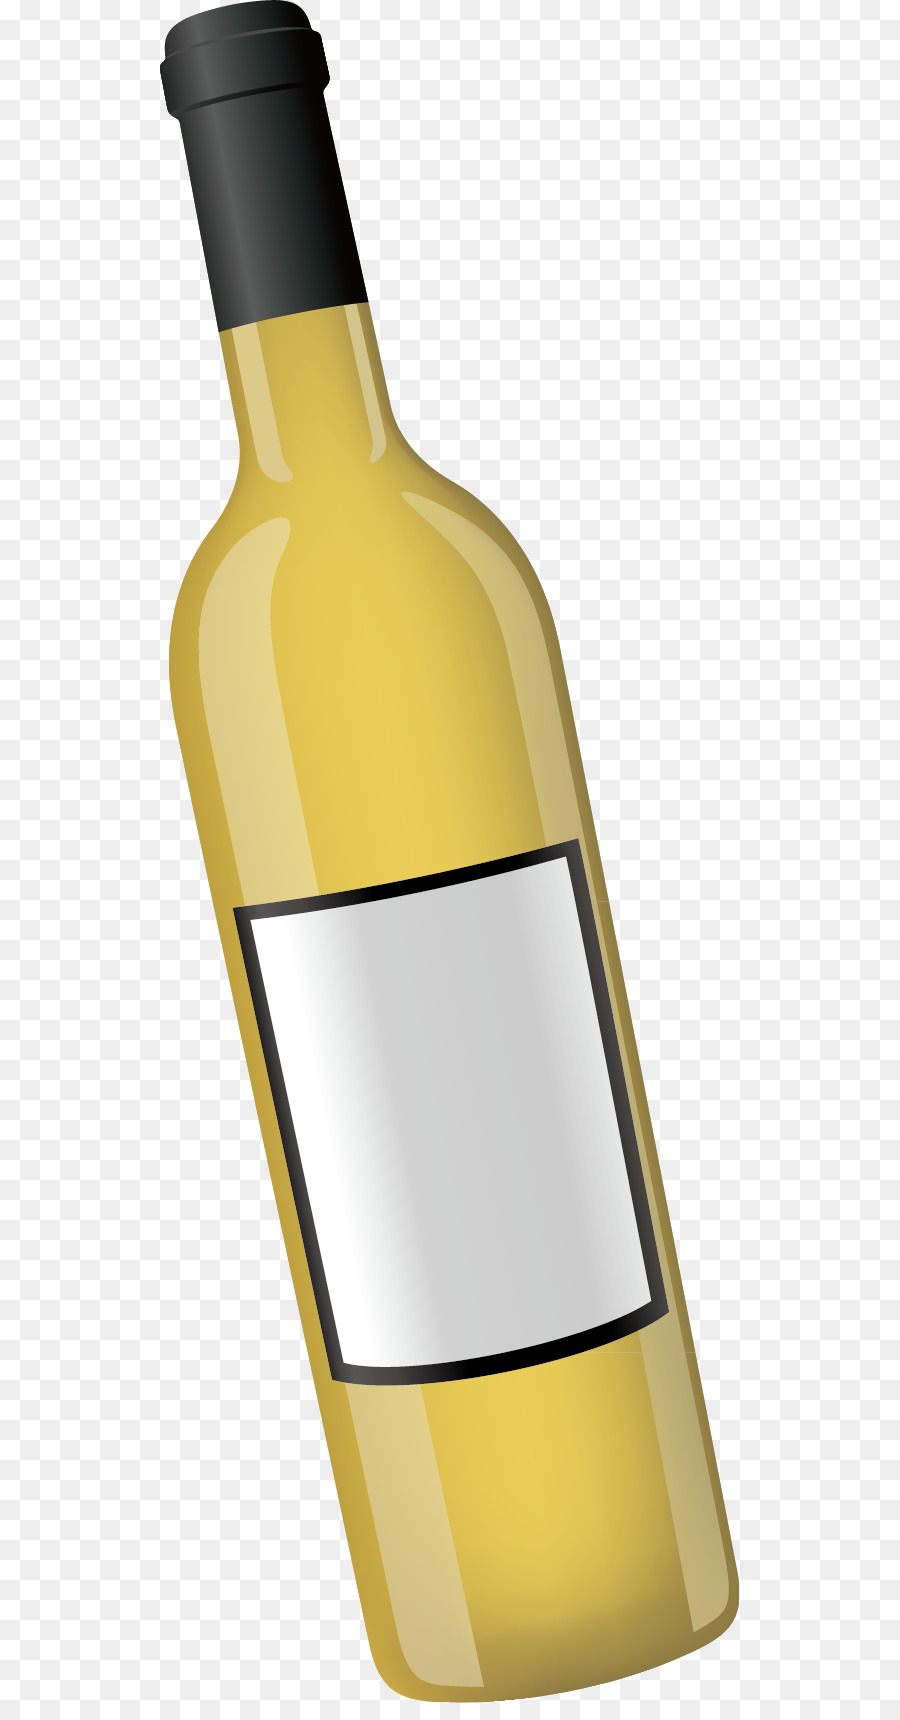 Wine Bottle Computer file - Wine bottle decoration design vector png download - 579*1703 - Free Transparent Wine png Download.